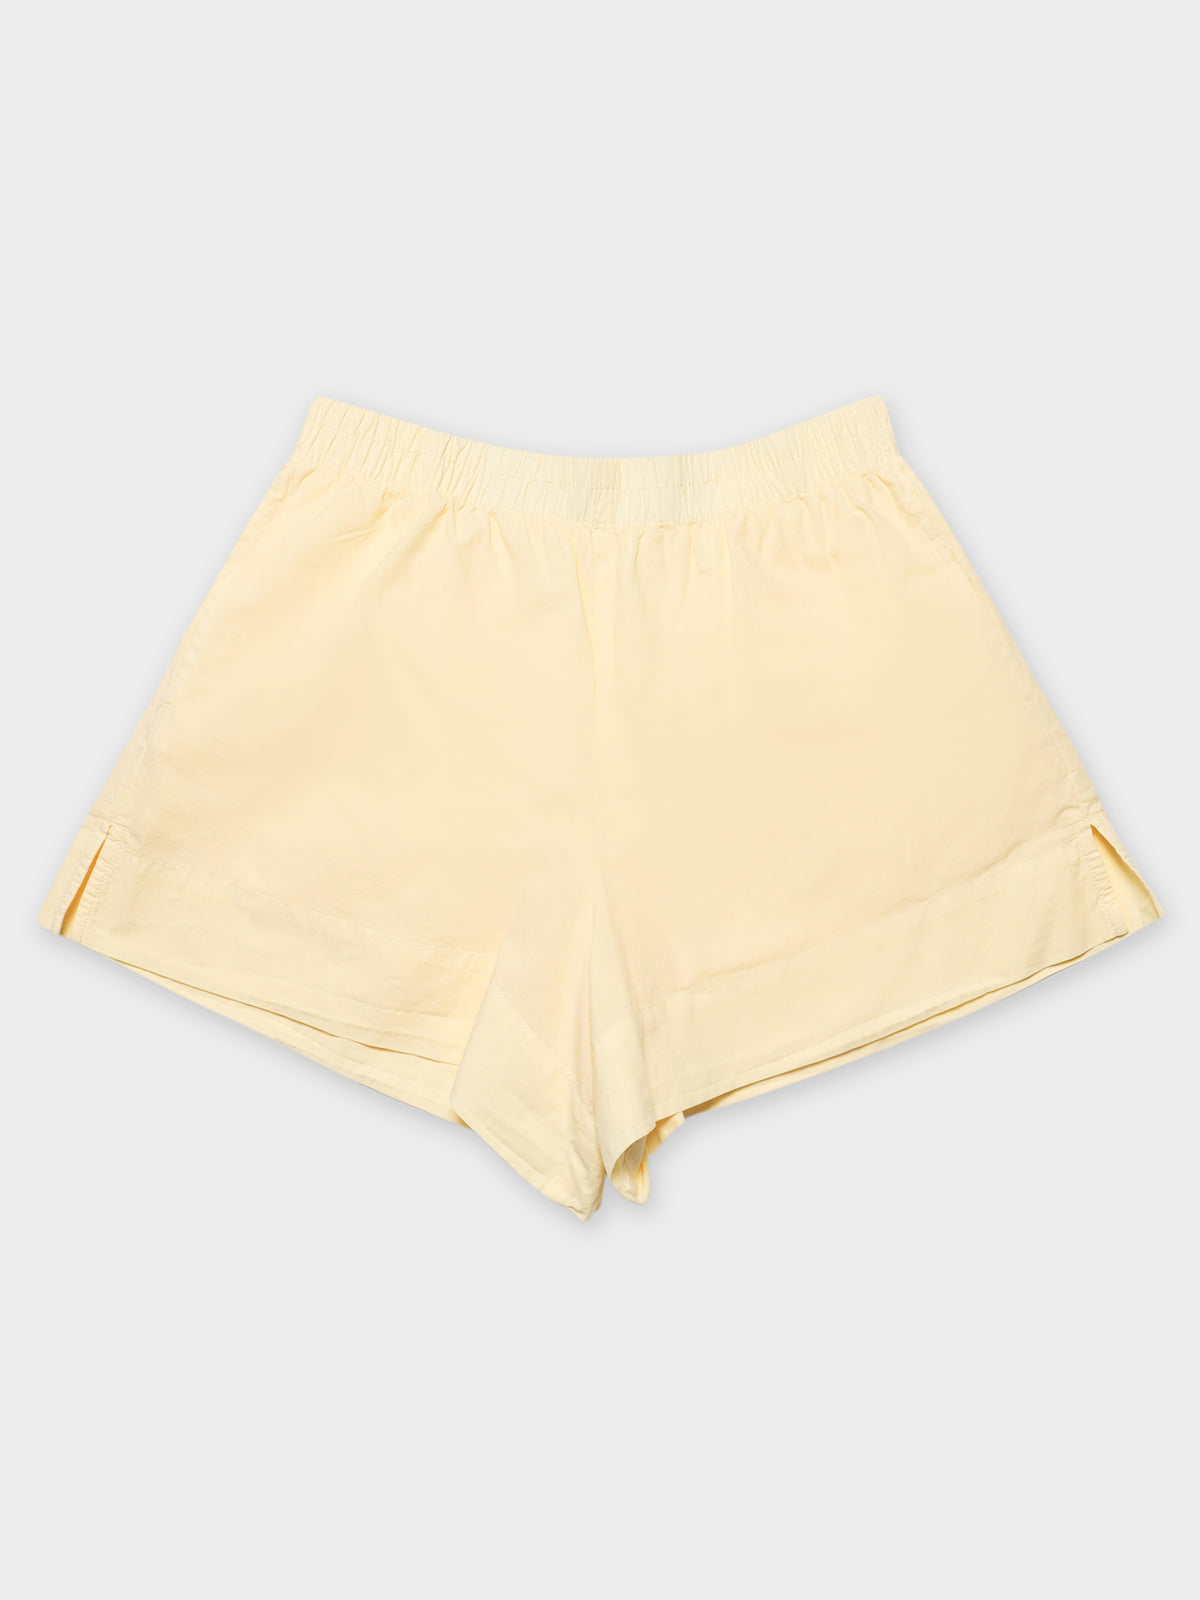 Naya Washed Cotton Shorts in Lemonade